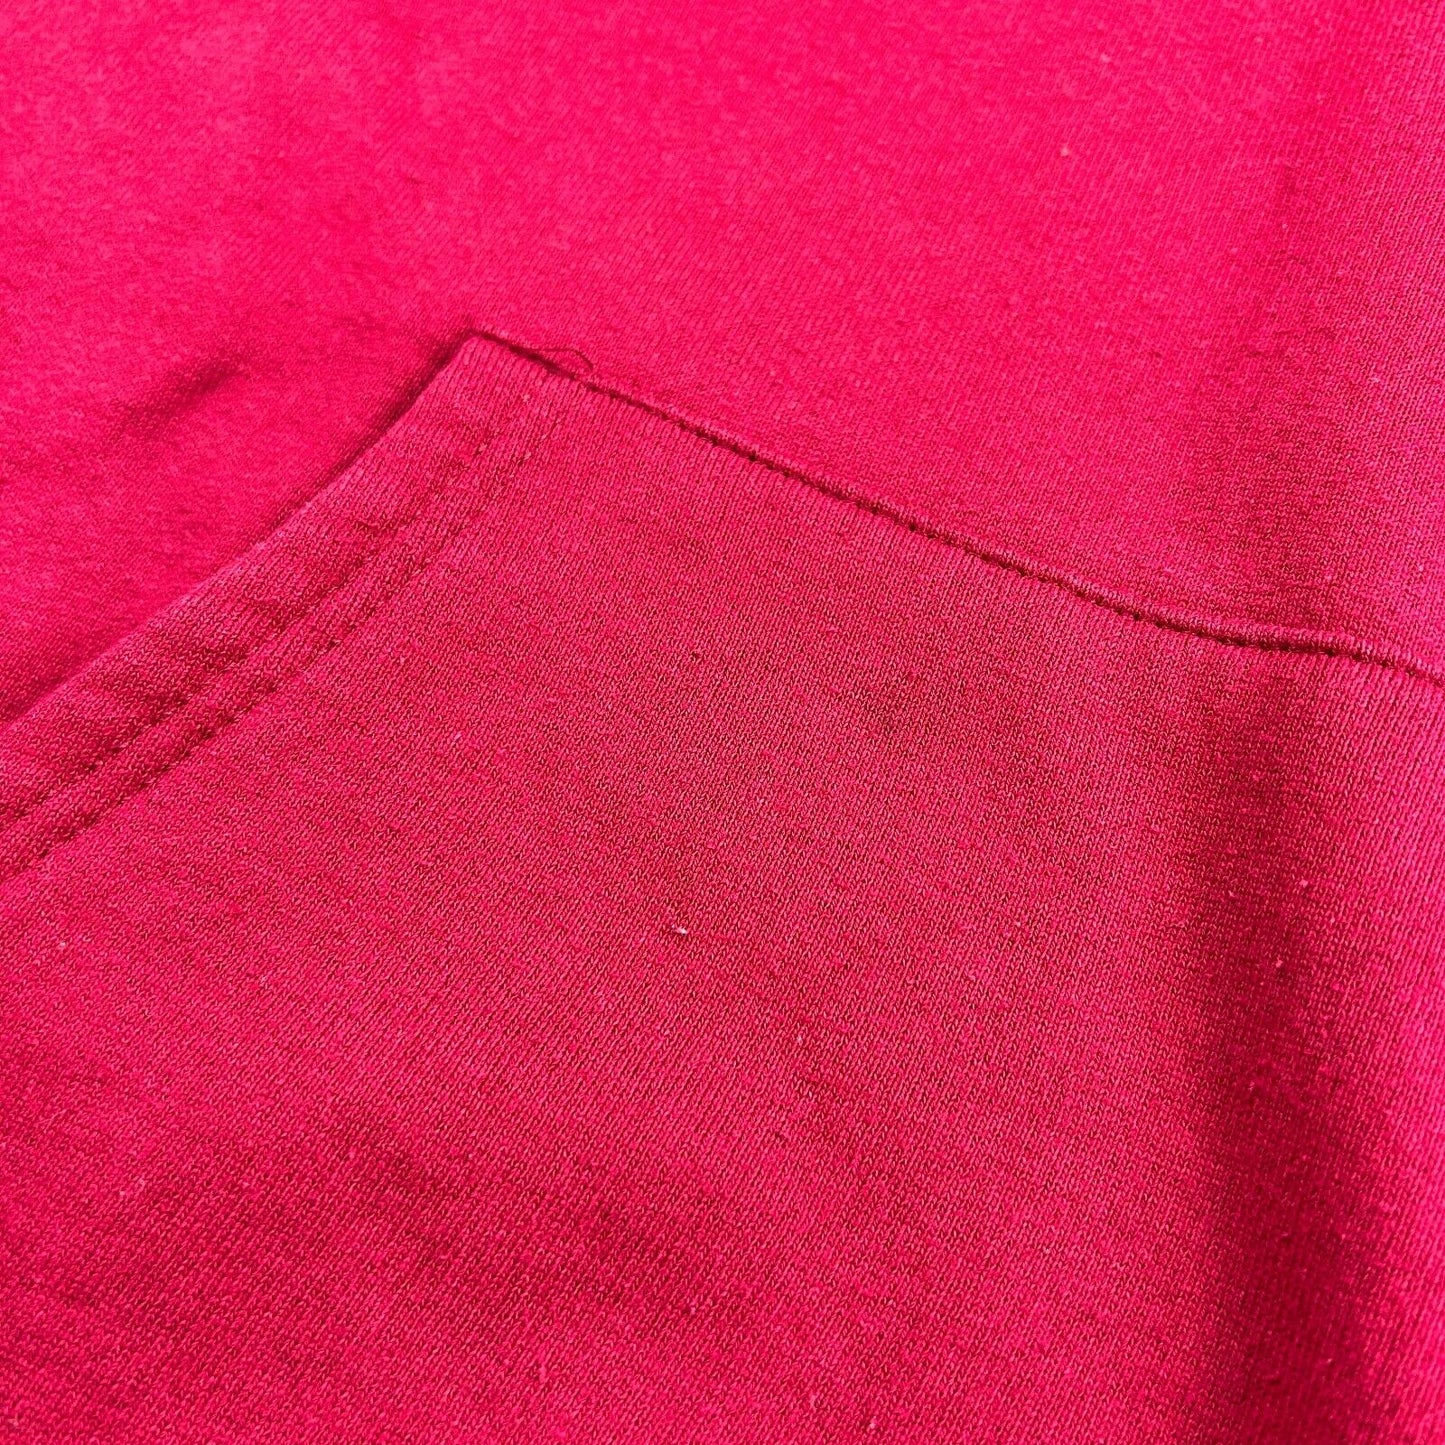 VINTAGE 90s WILSON Big Logo Red Hoodie Sweater sz Large Mens